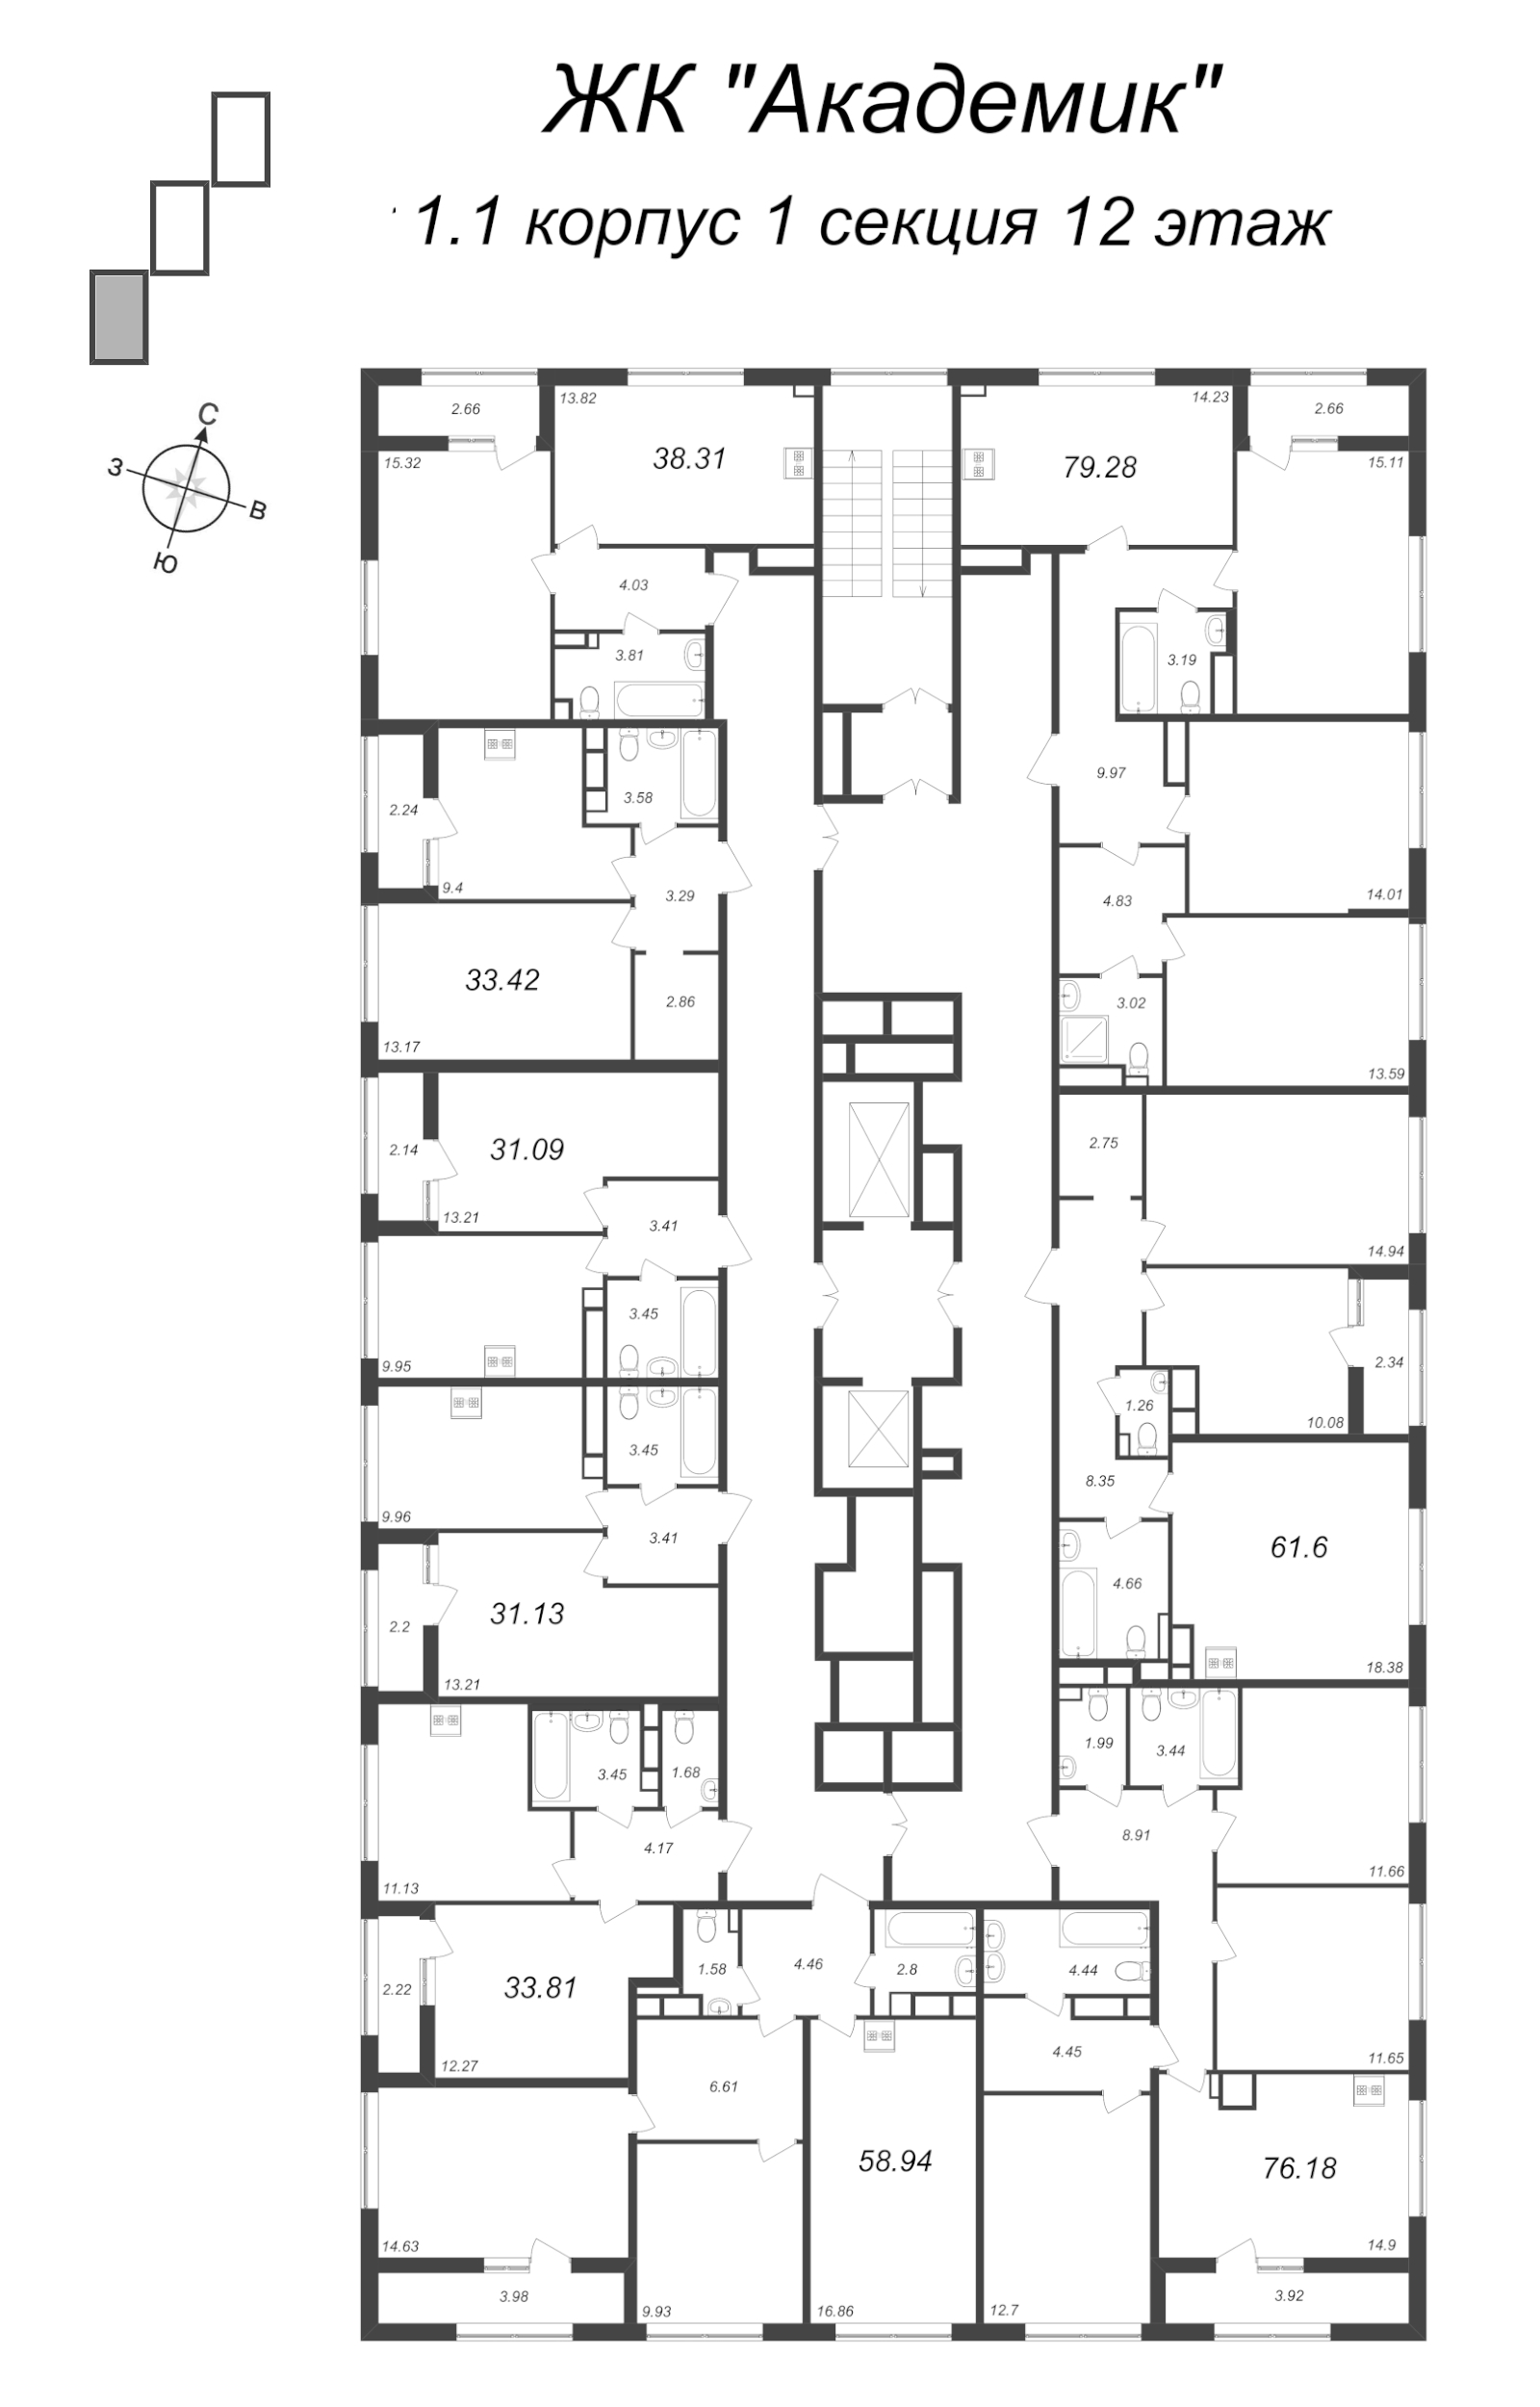 3-комнатная квартира, 76.1 м² в ЖК "Академик" - планировка этажа